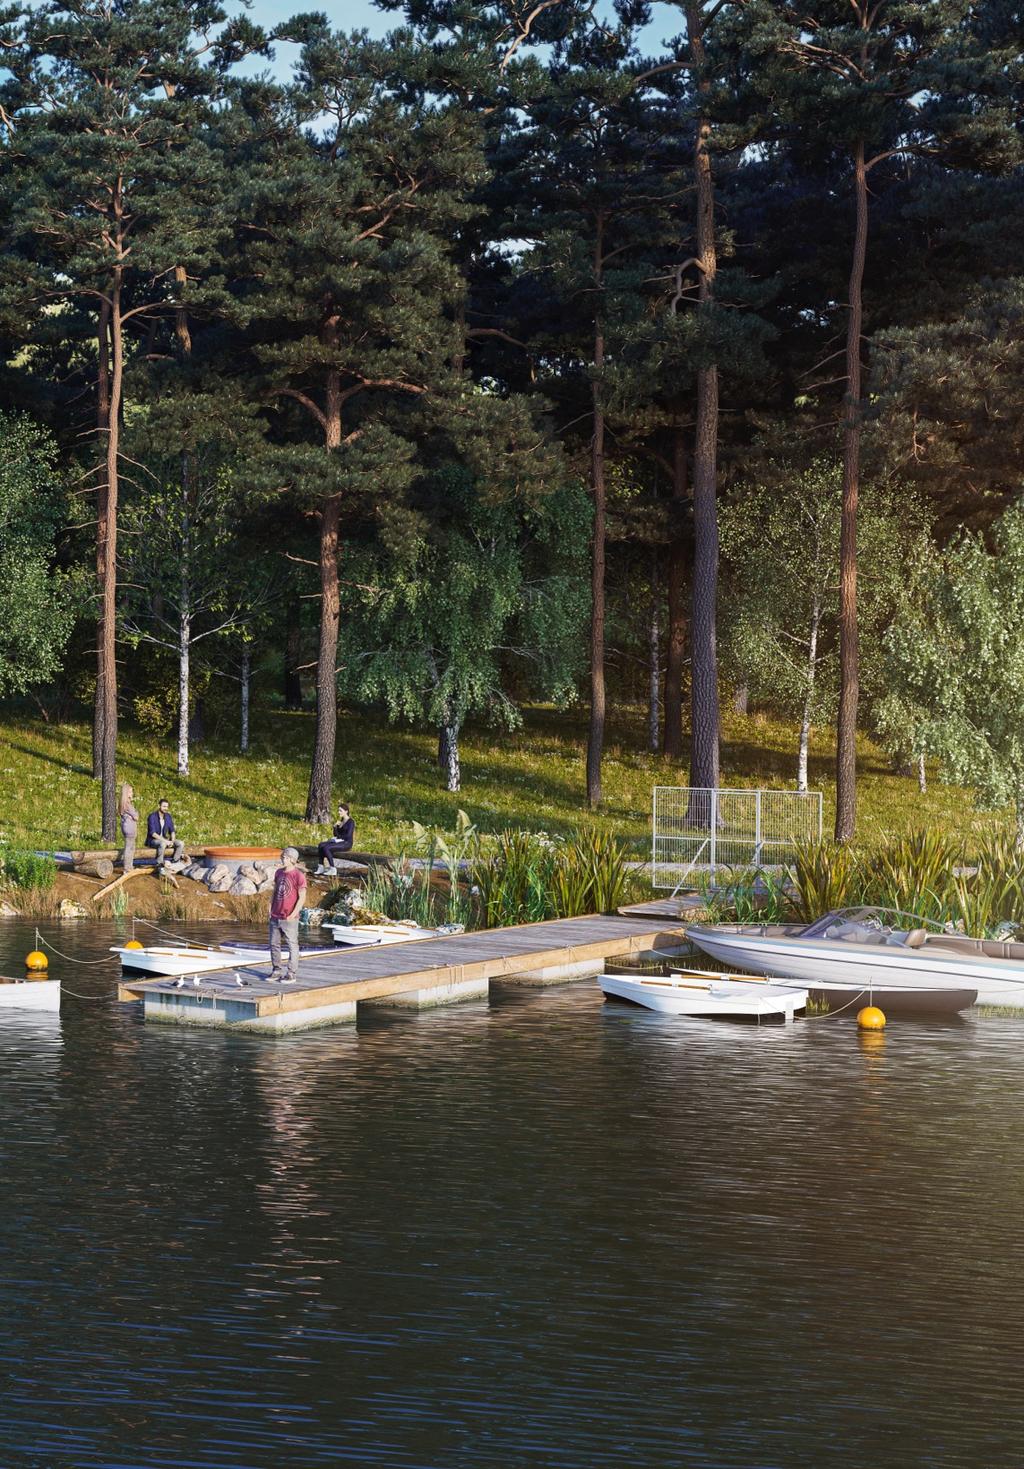 Egen båtplats i sjön Runn De nya radhusen ligger nära sjön Runn där det ingår en båtplats vid de två nya bryggorna.